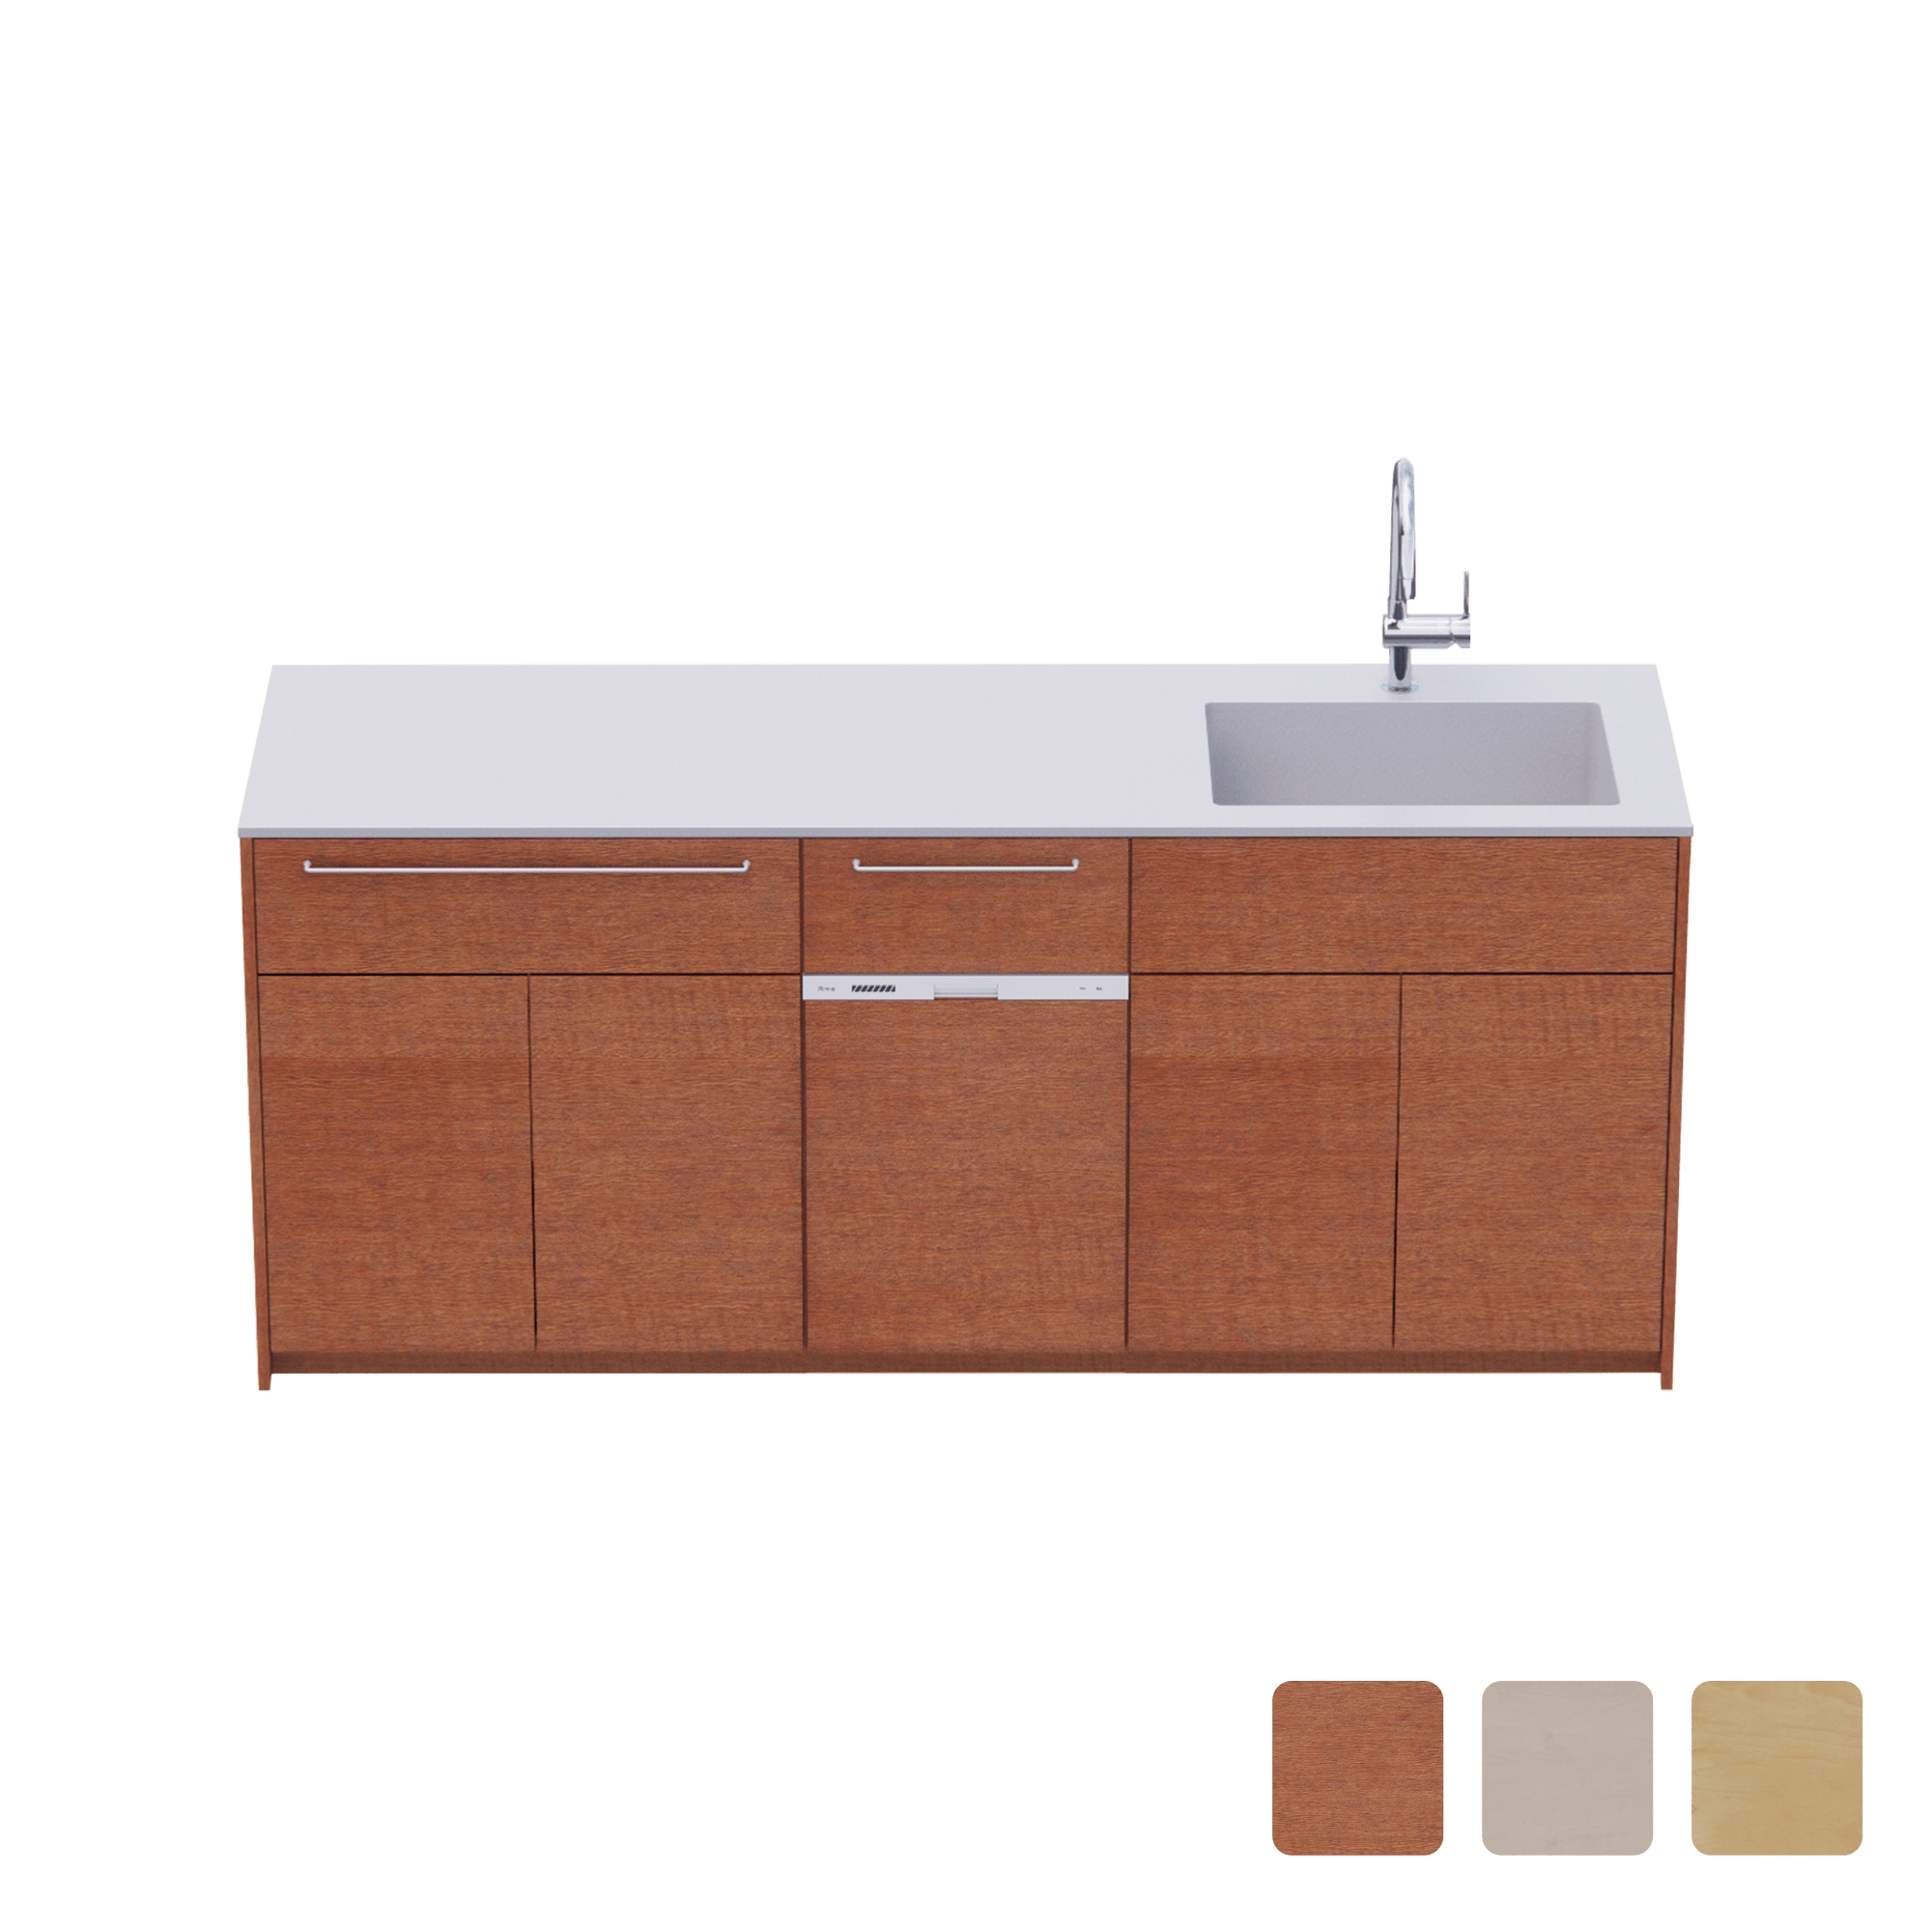 木製システムキッチン 壁付け型 W1990・コンロなし / オーブンなし / 食洗機あり